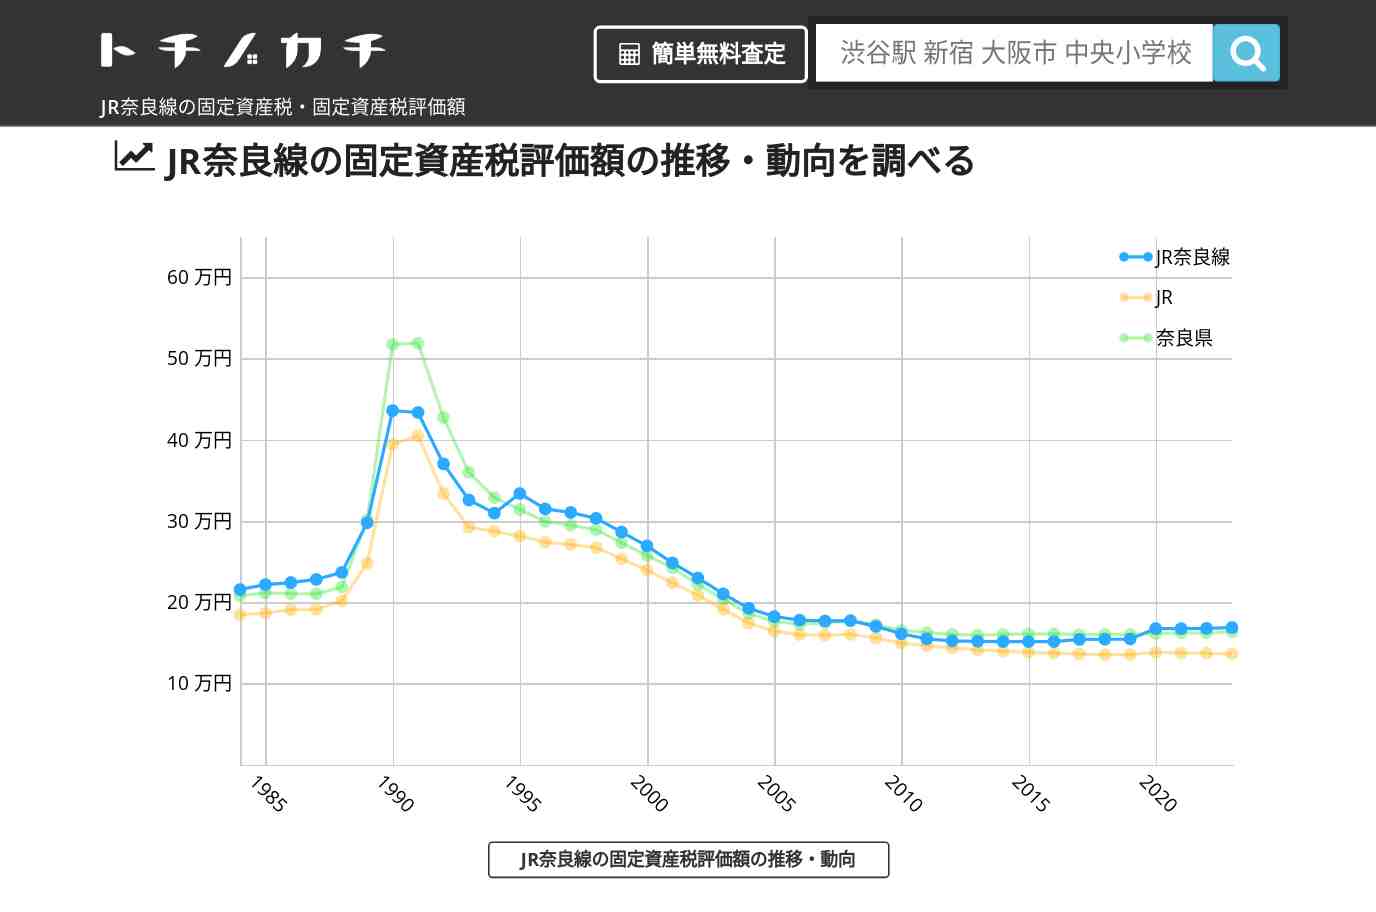 JR奈良線(JR)の固定資産税・固定資産税評価額 | トチノカチ